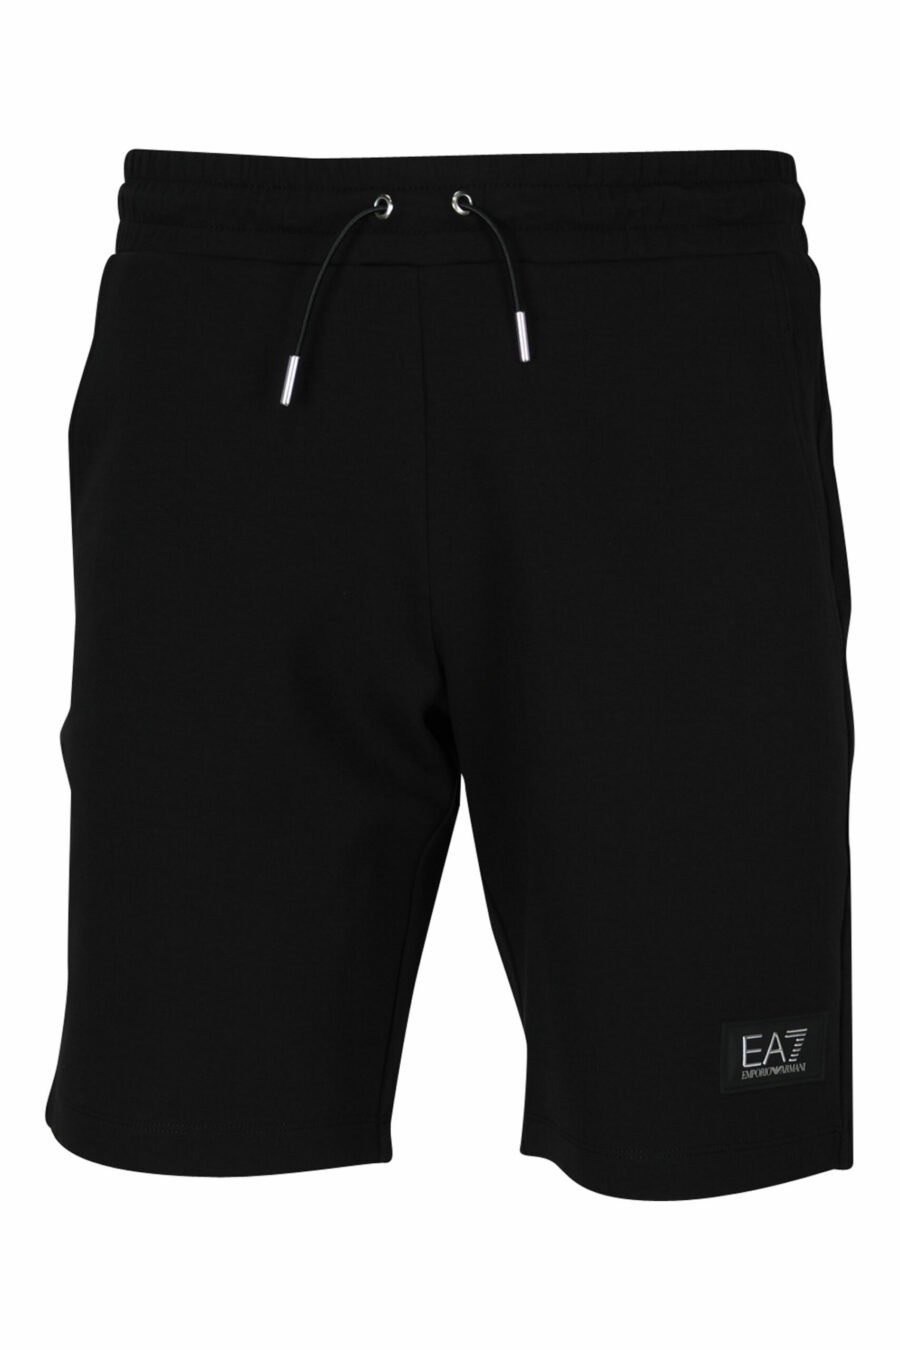 Trainingshose schwarze Shorts mit weißem "lux identity" Minilogo auf schwarzer Platte - 107531 skaliert